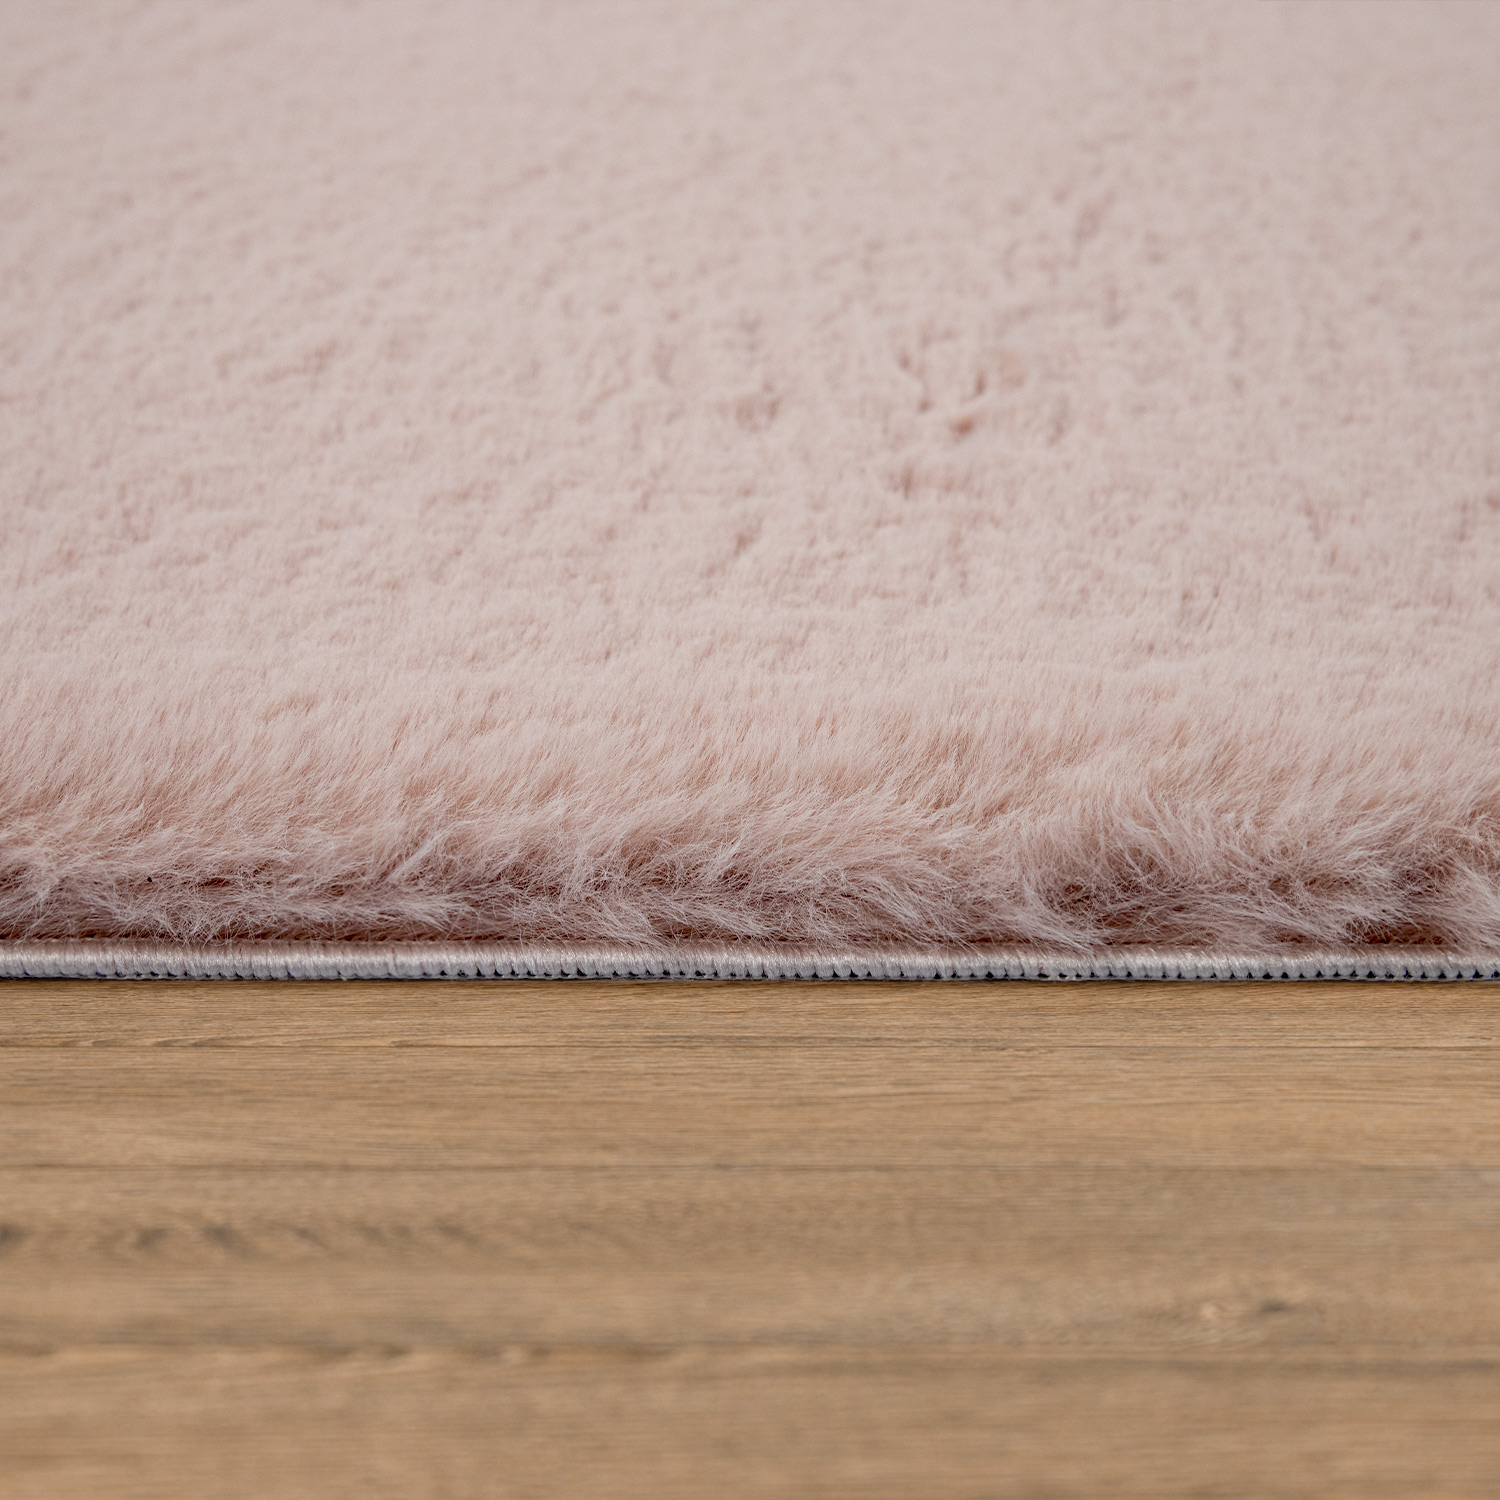 Flauschiger-Teppich Solina Pink Modern